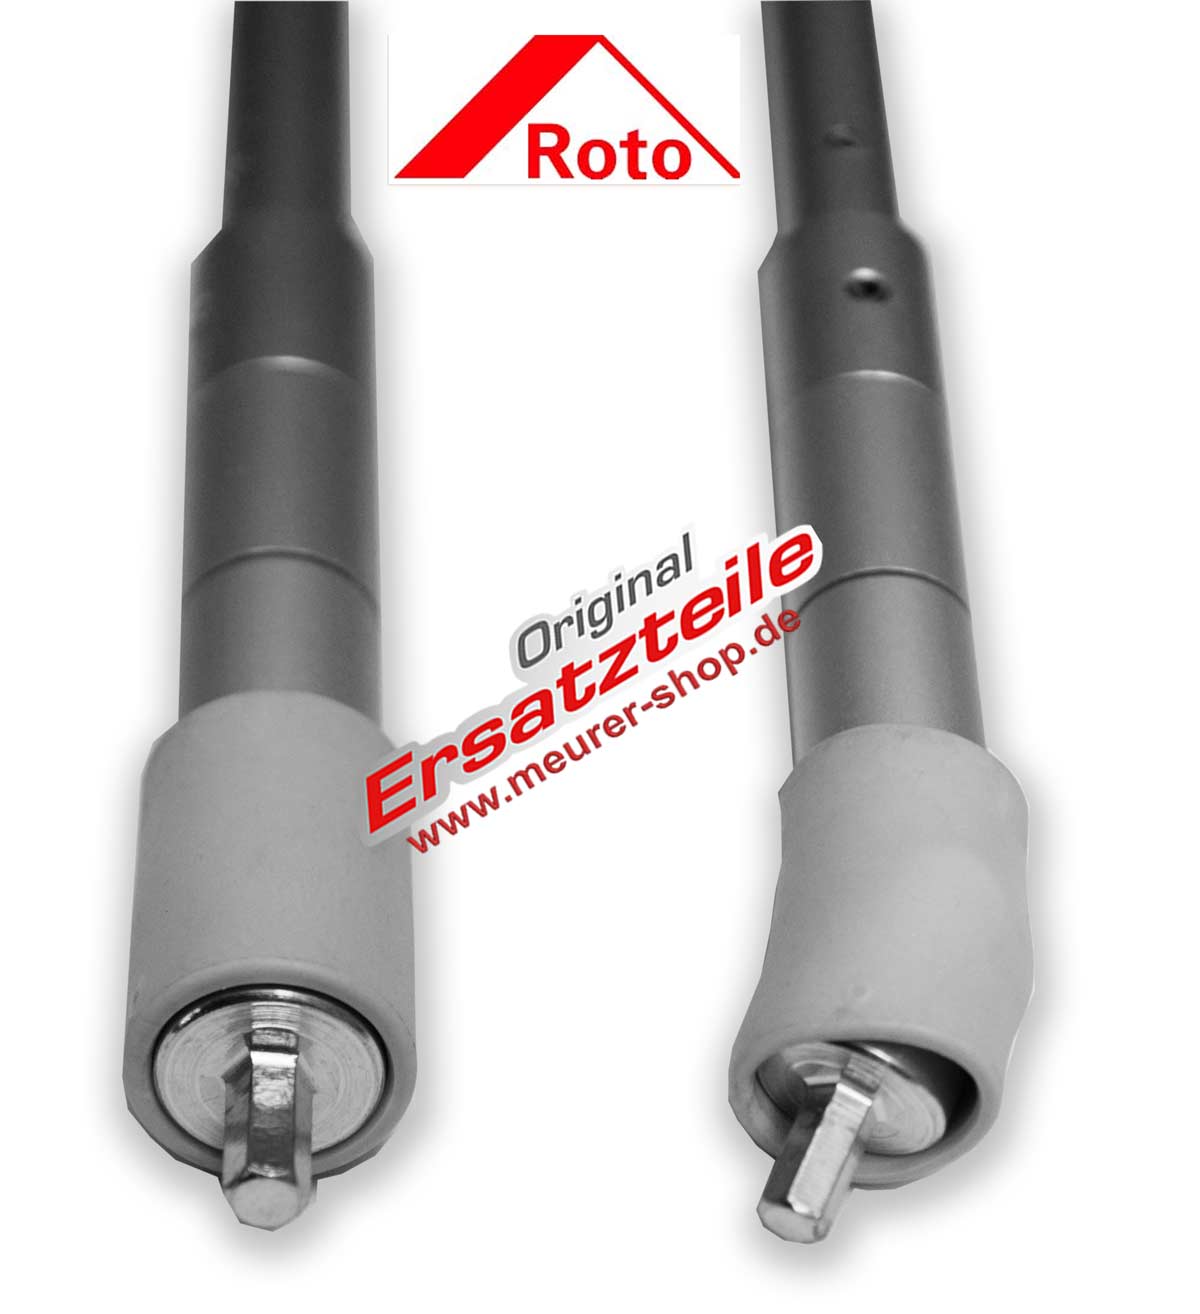 Kurbel für Roto Therm Rollladen-266189 ZRO RT1 M